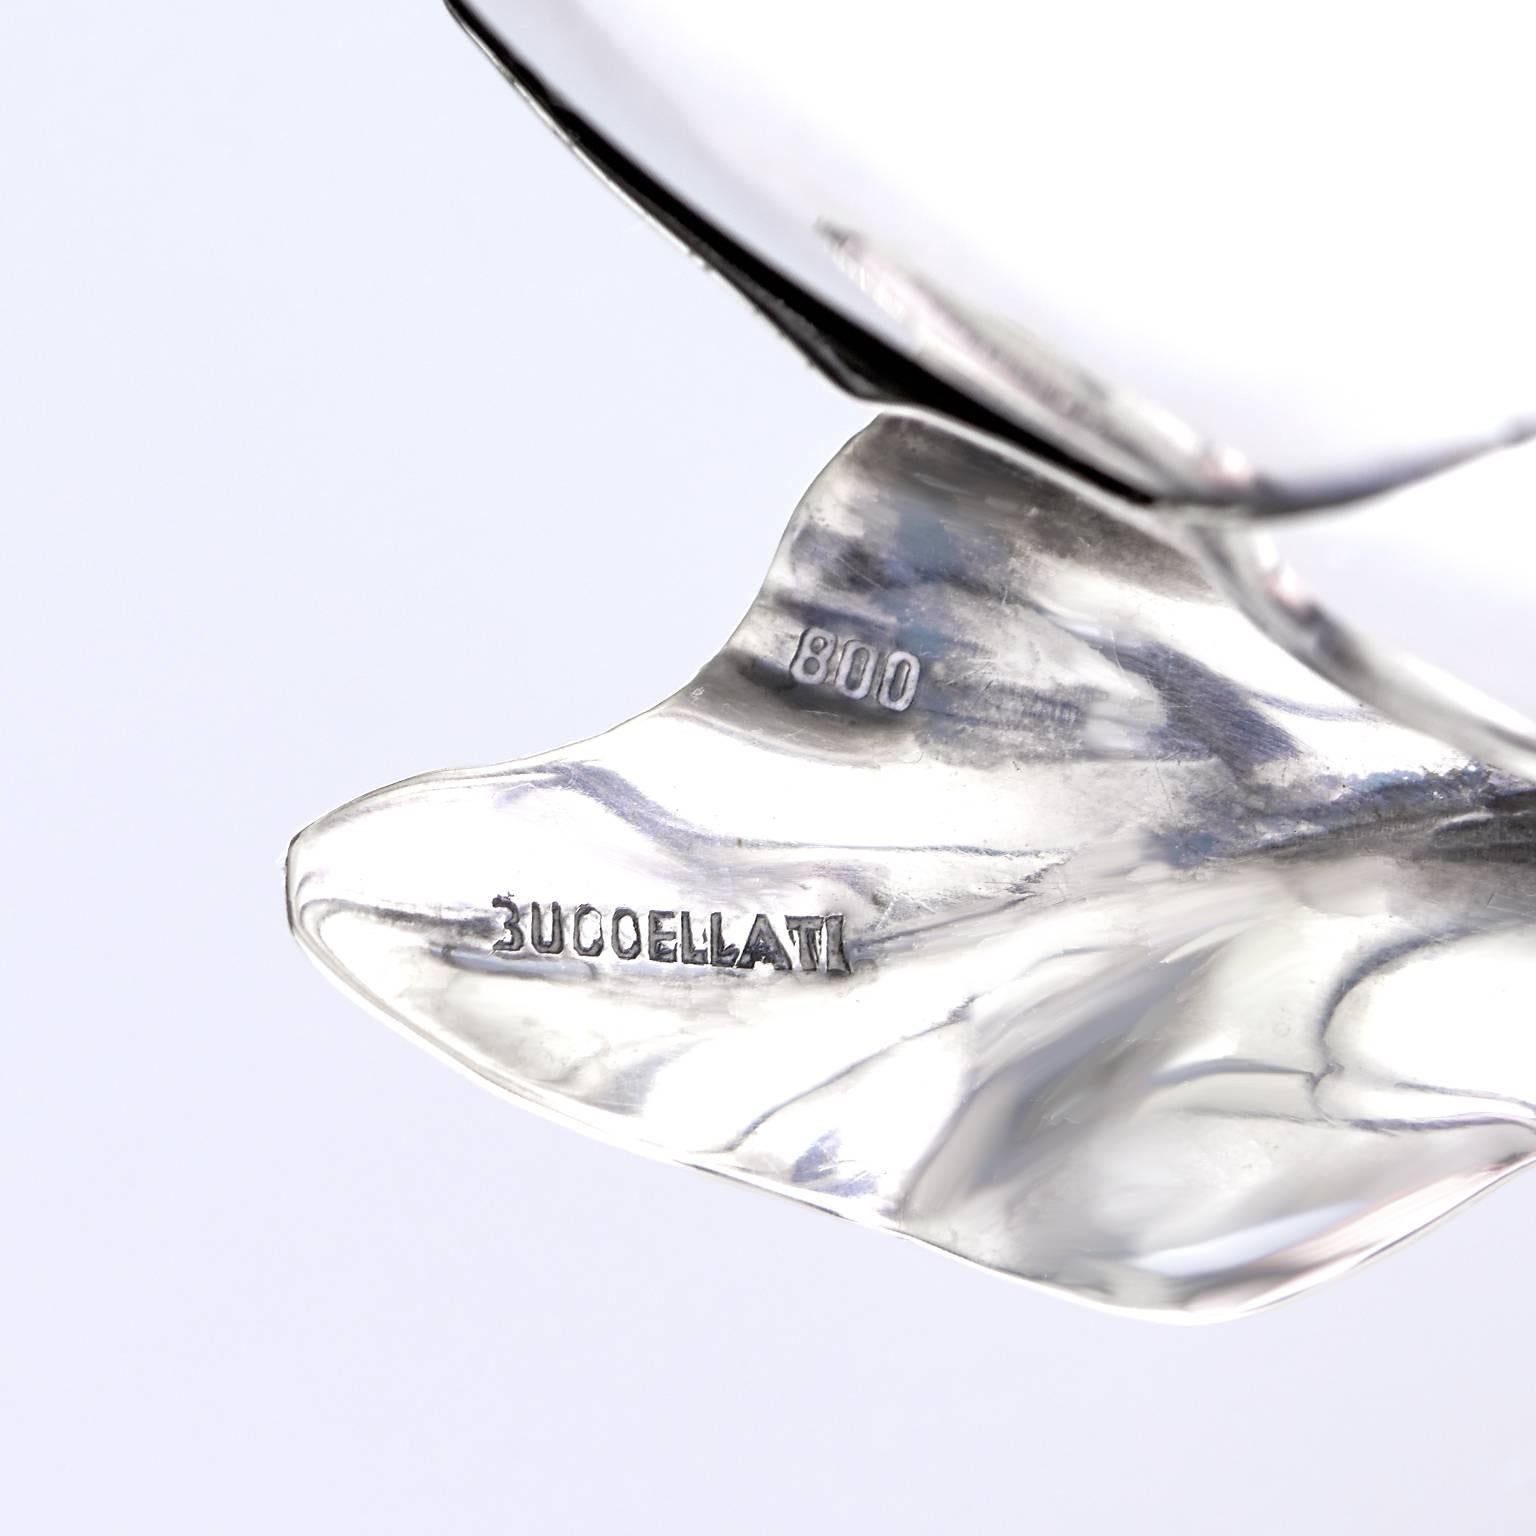 Mid-20th Century Mario Buccellati Silver Artichoke Lighter